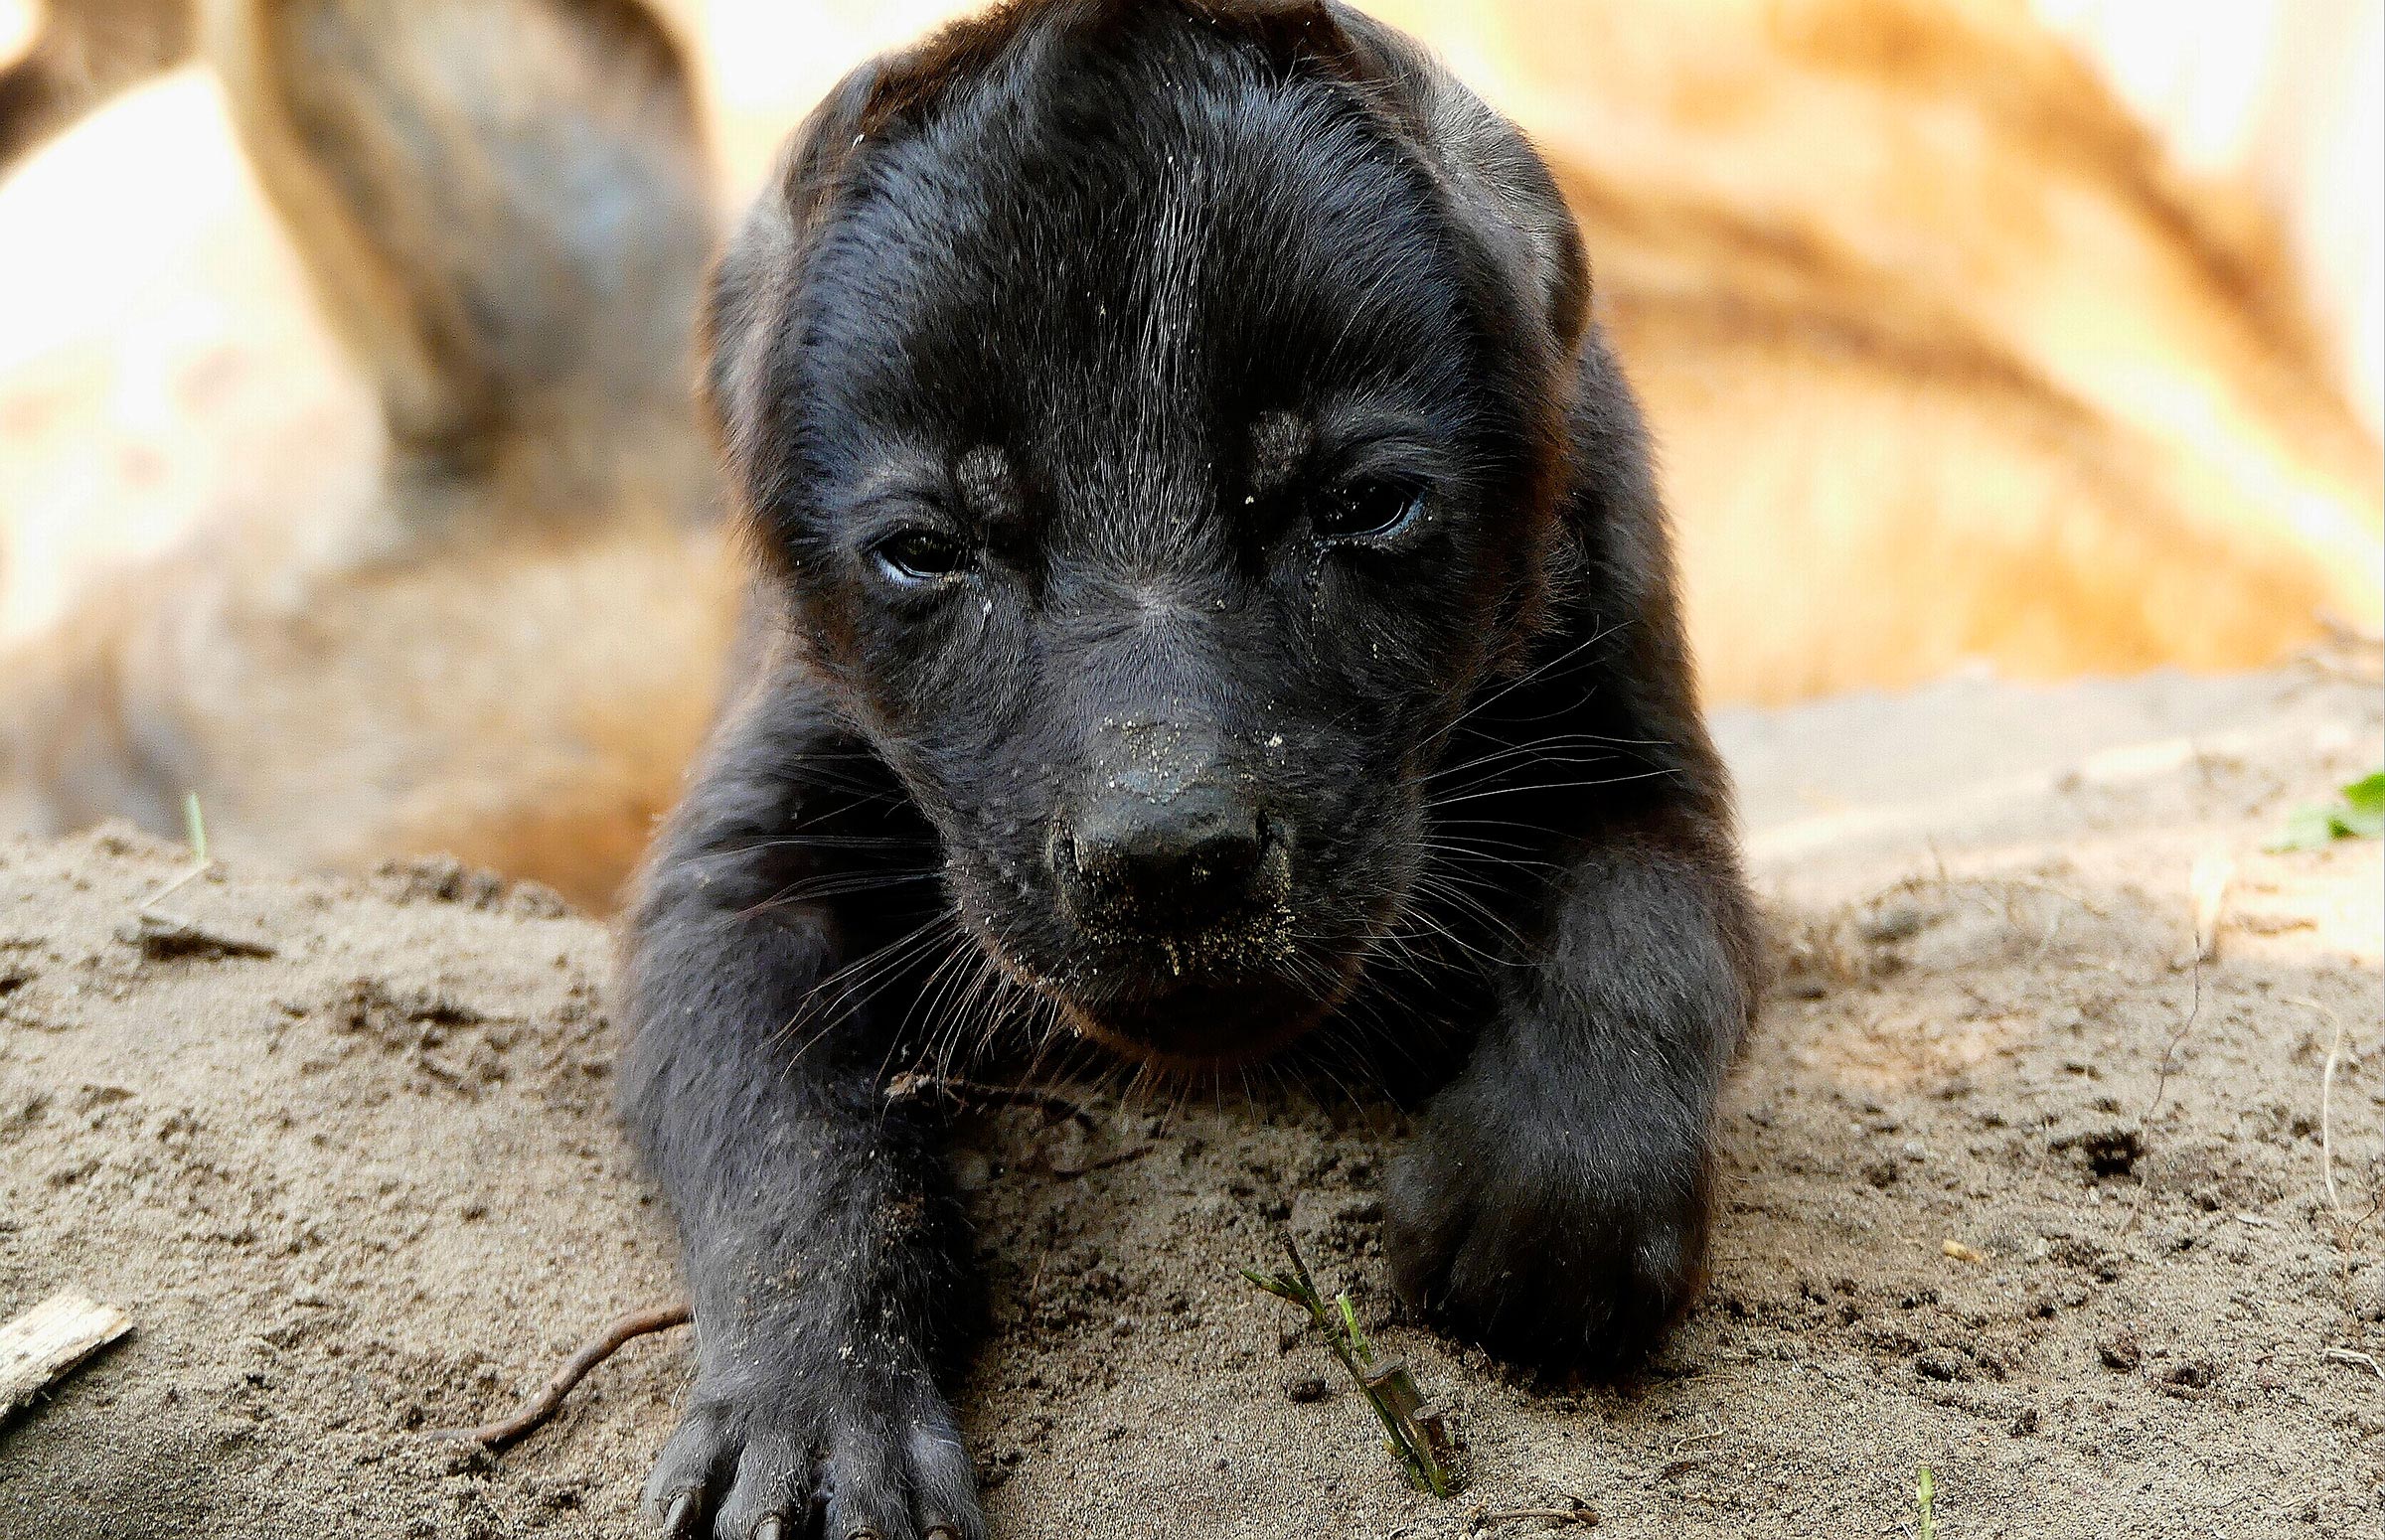 hyena-pup-geboren-beekse-bergen.jpg